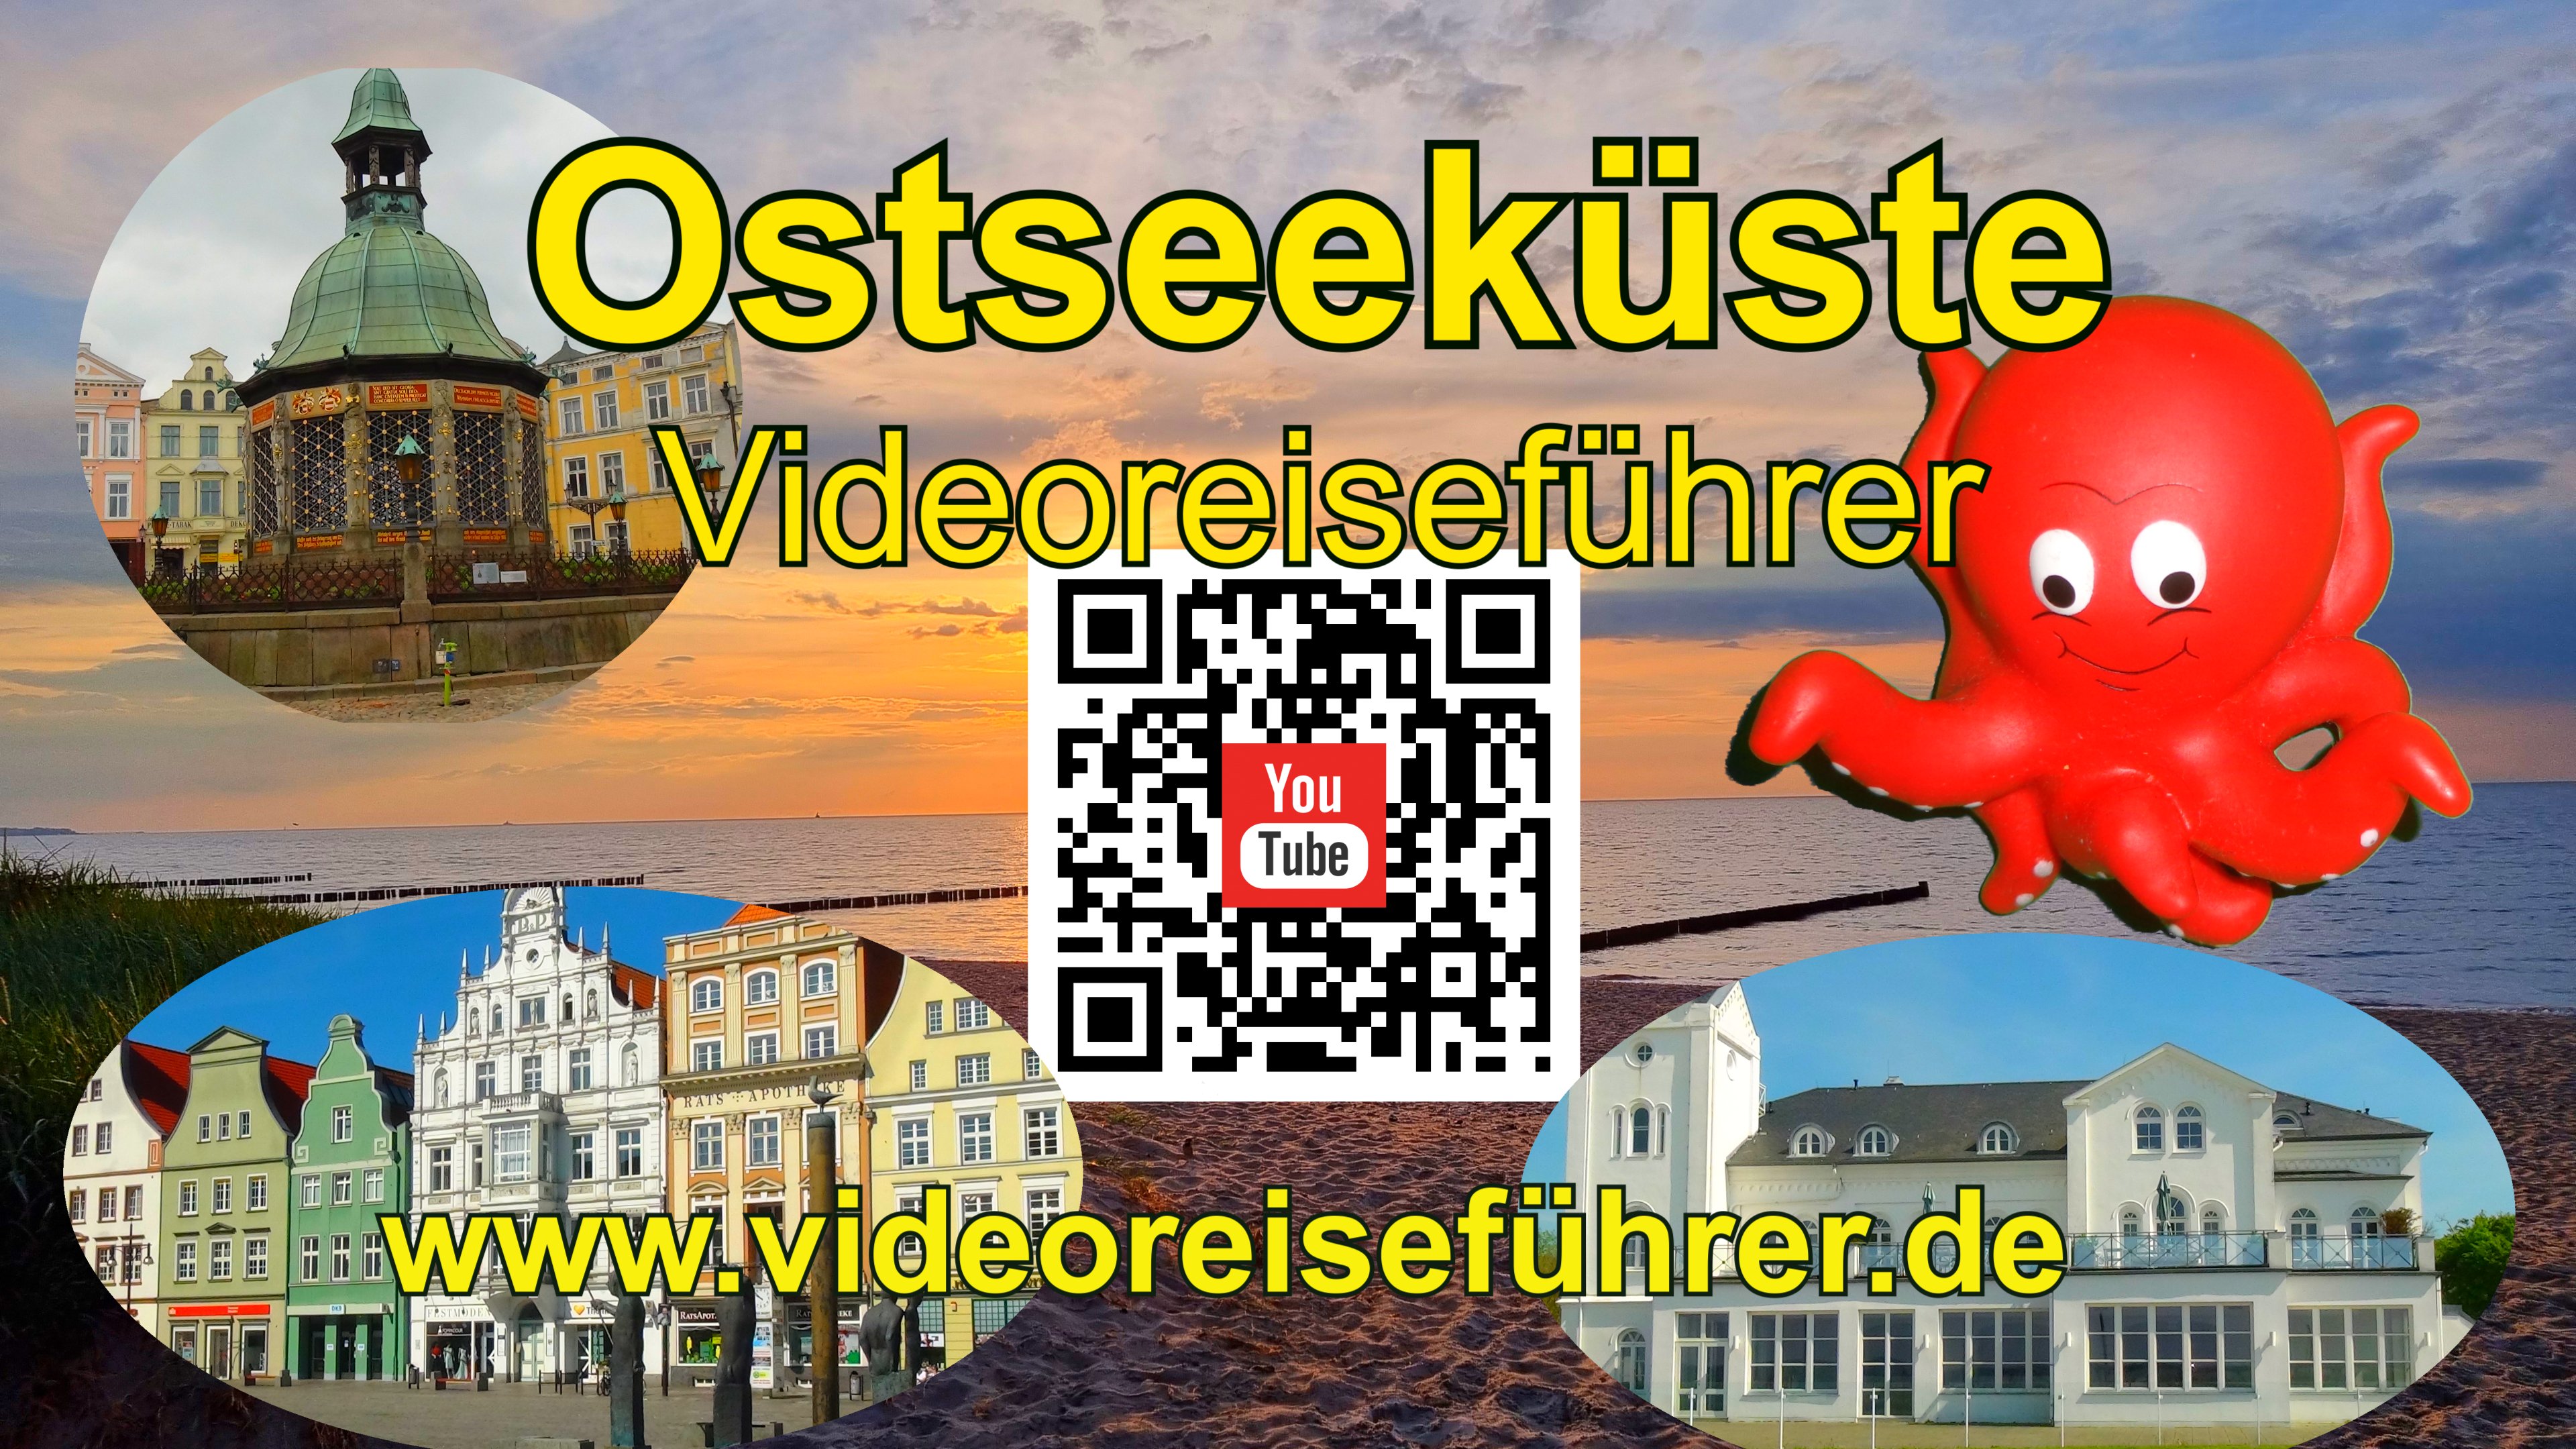 Ostseekueste und Mecklenburg  Vorpommern per Videoreiseführer von Ulf Zaspel - Immobilien